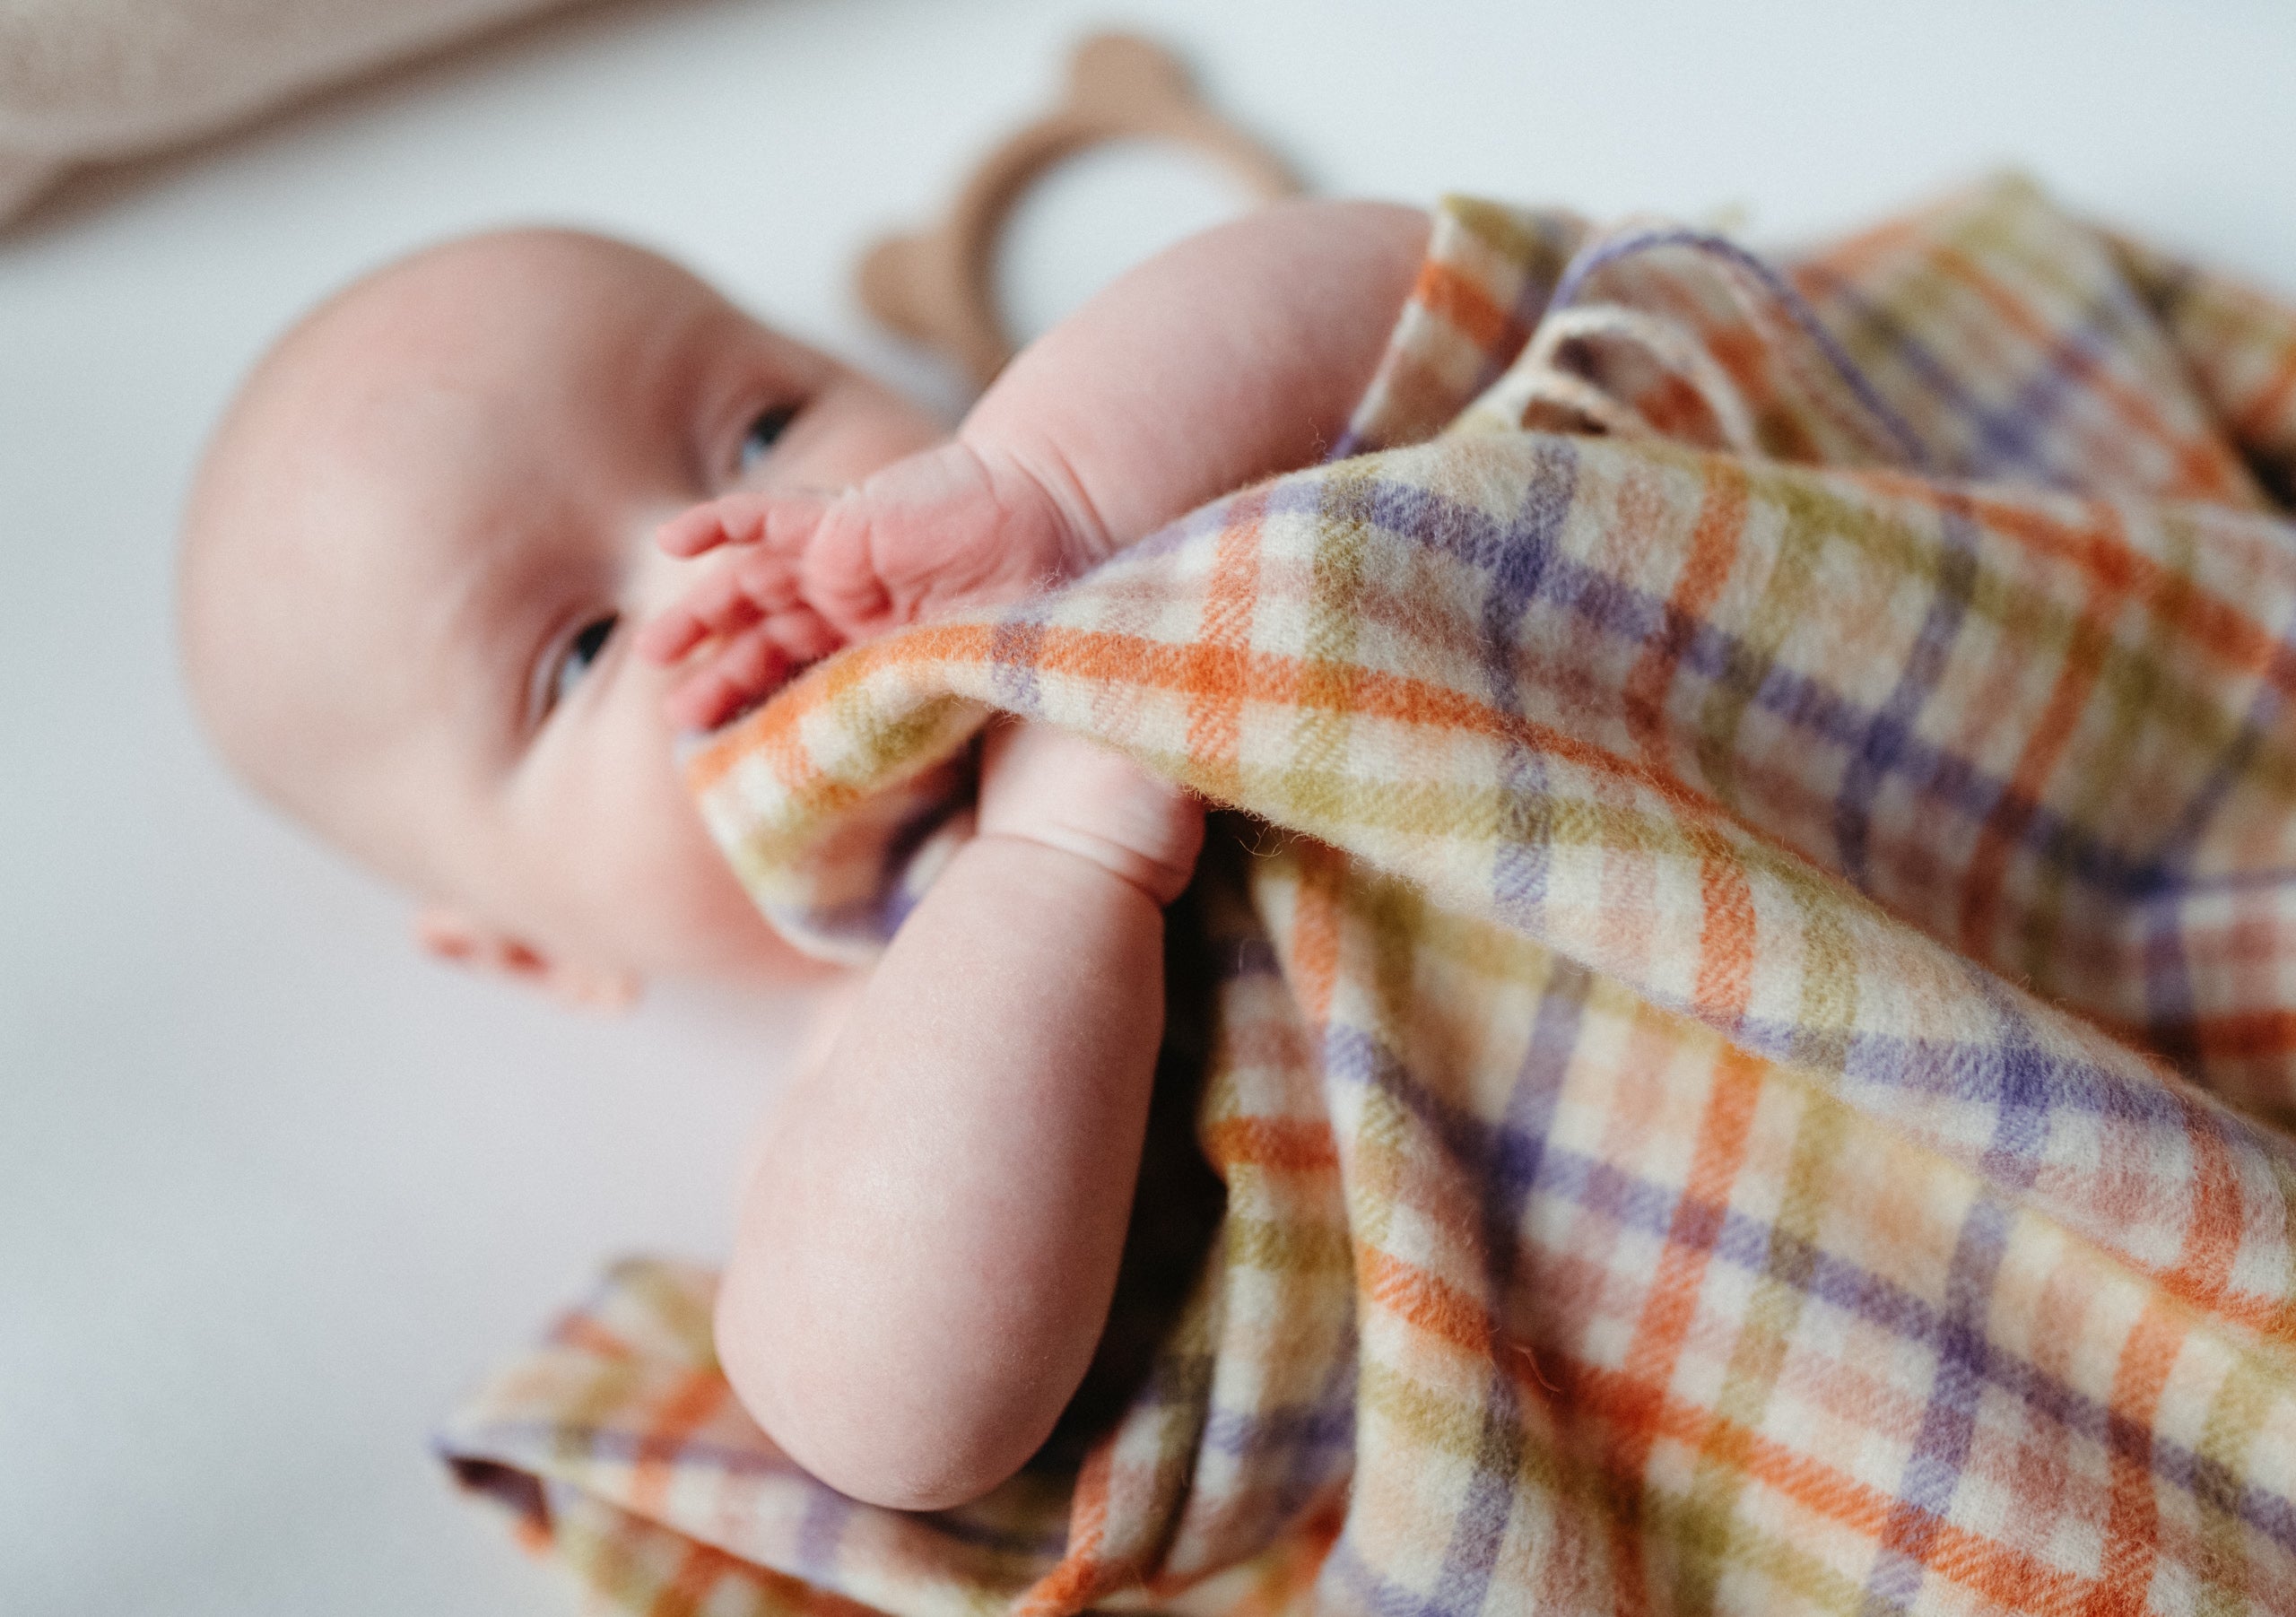 Gros plan d'un bébé couché dans un berceau avec une couverture de bébé à carreaux vichy colorés qui le recouvre